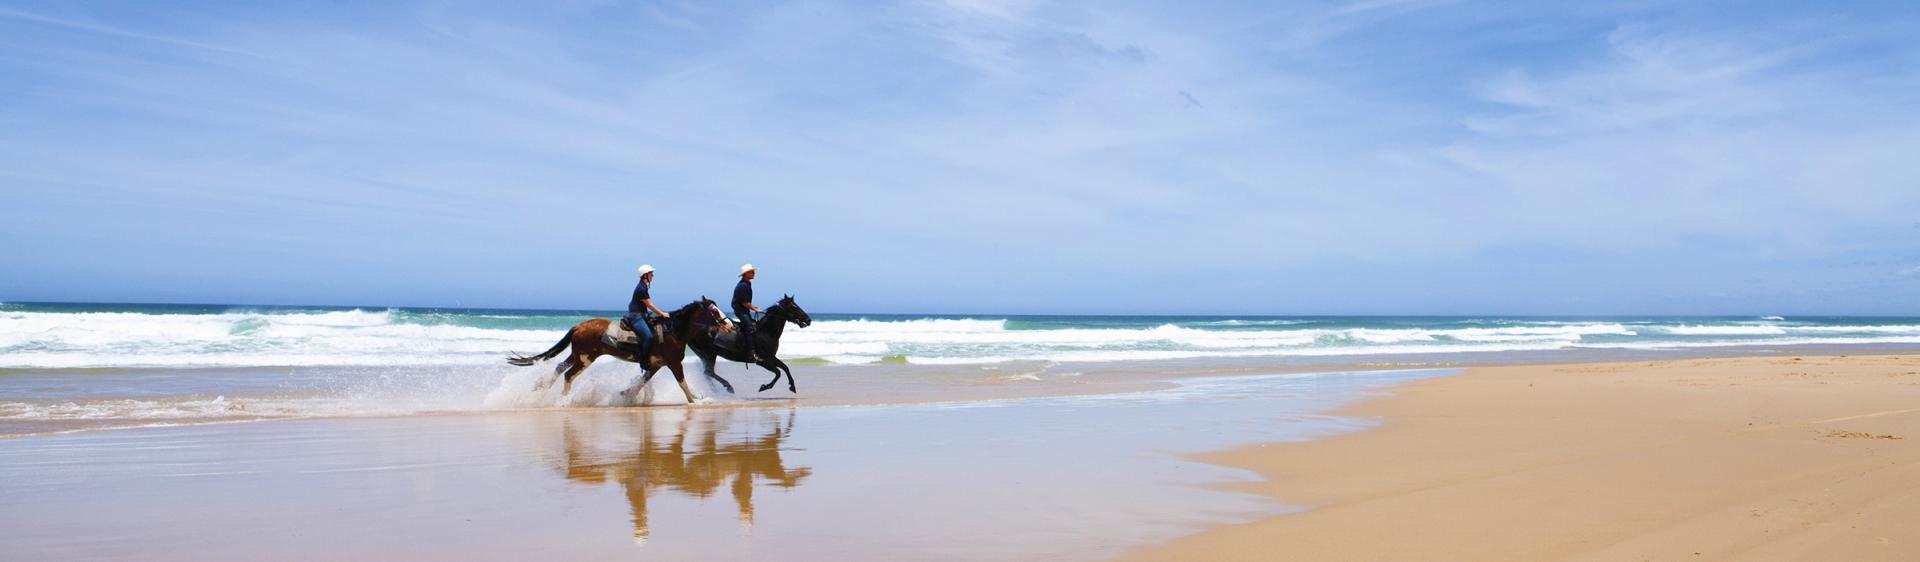 史蒂芬斯港 (Port Stephens) 海滩骑马